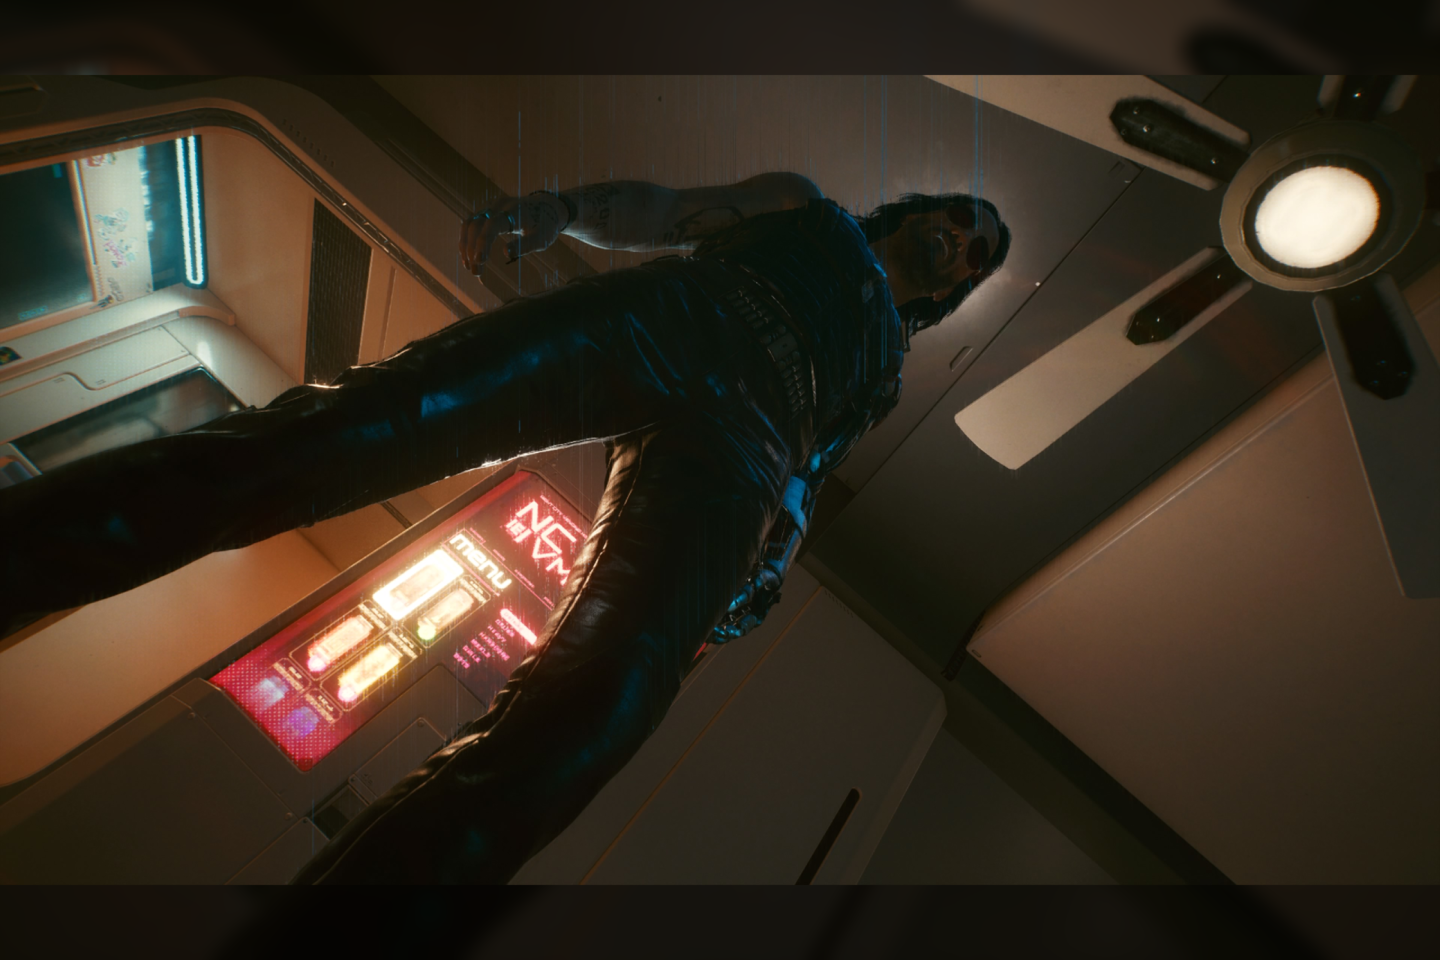   Vaizdai iš „Cyberpunk 2077“ pasaulio. Ekrano nuotraukos žaidžiant asmeniniu „Sony PlayStation 5“ kompiuteriu.